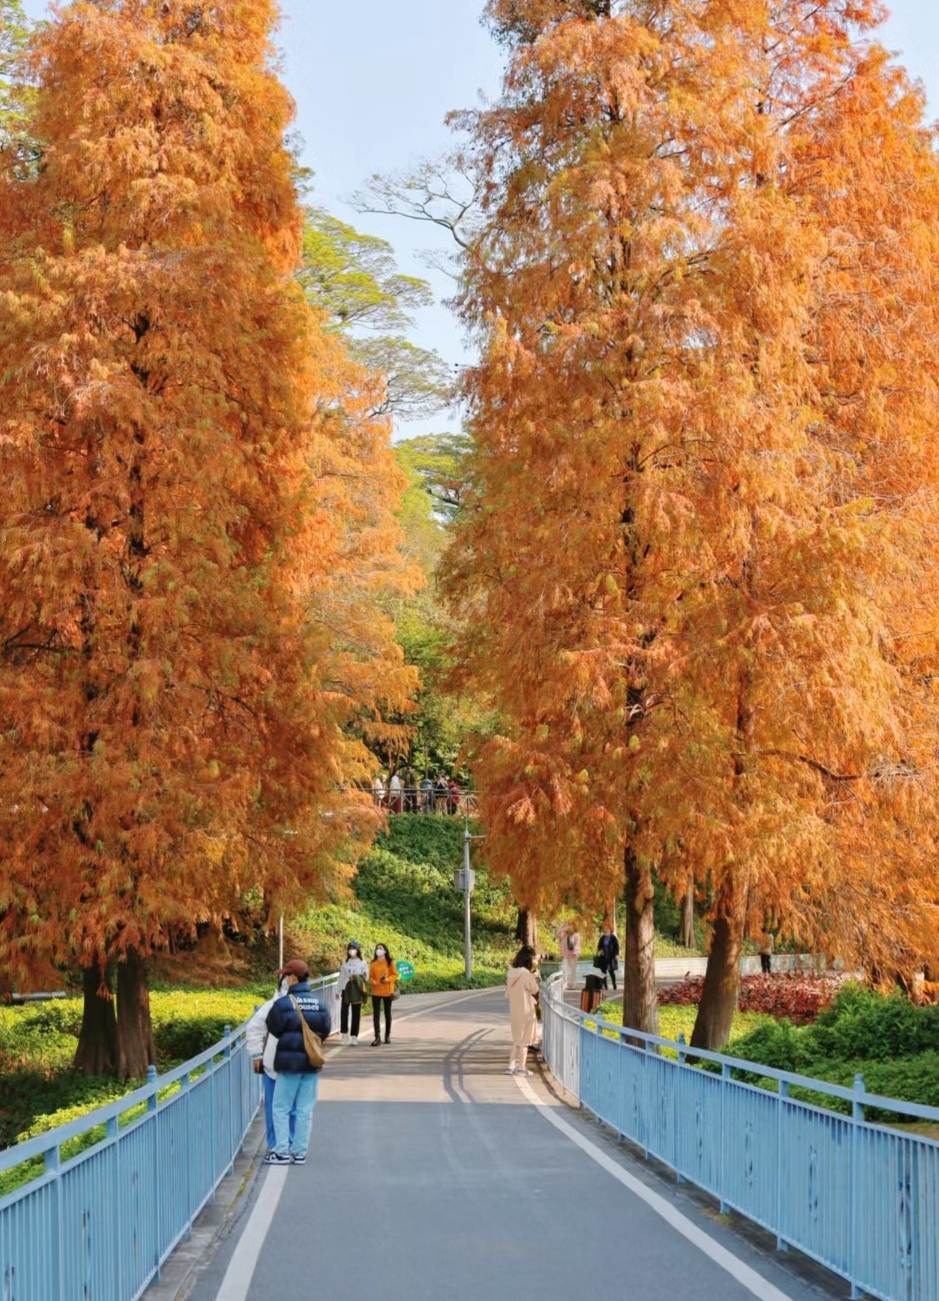  广州天河公园落羽杉分布在道路两旁。(图片来源：小红书@Mini淑儿)